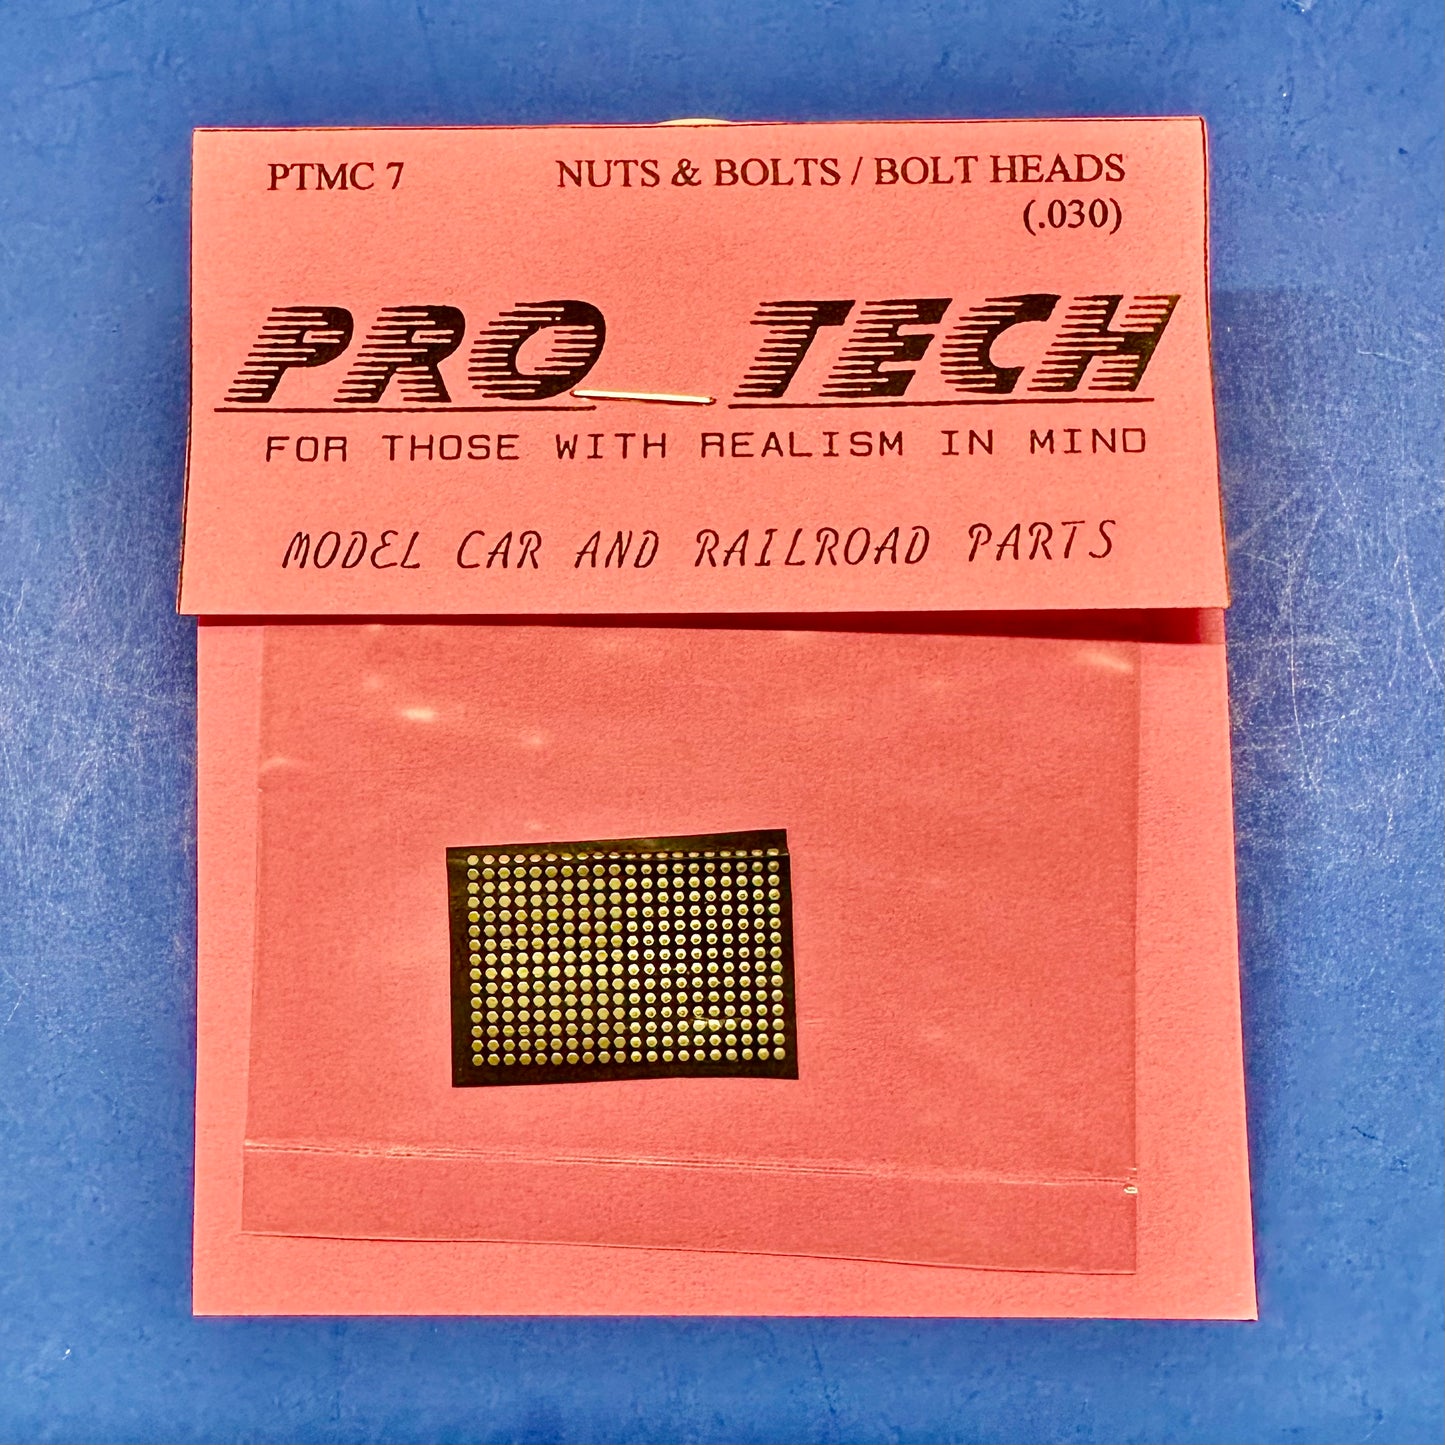 PTMC7 Nuts, Bolts, Bolt Heads 1/25 by Pro Tech